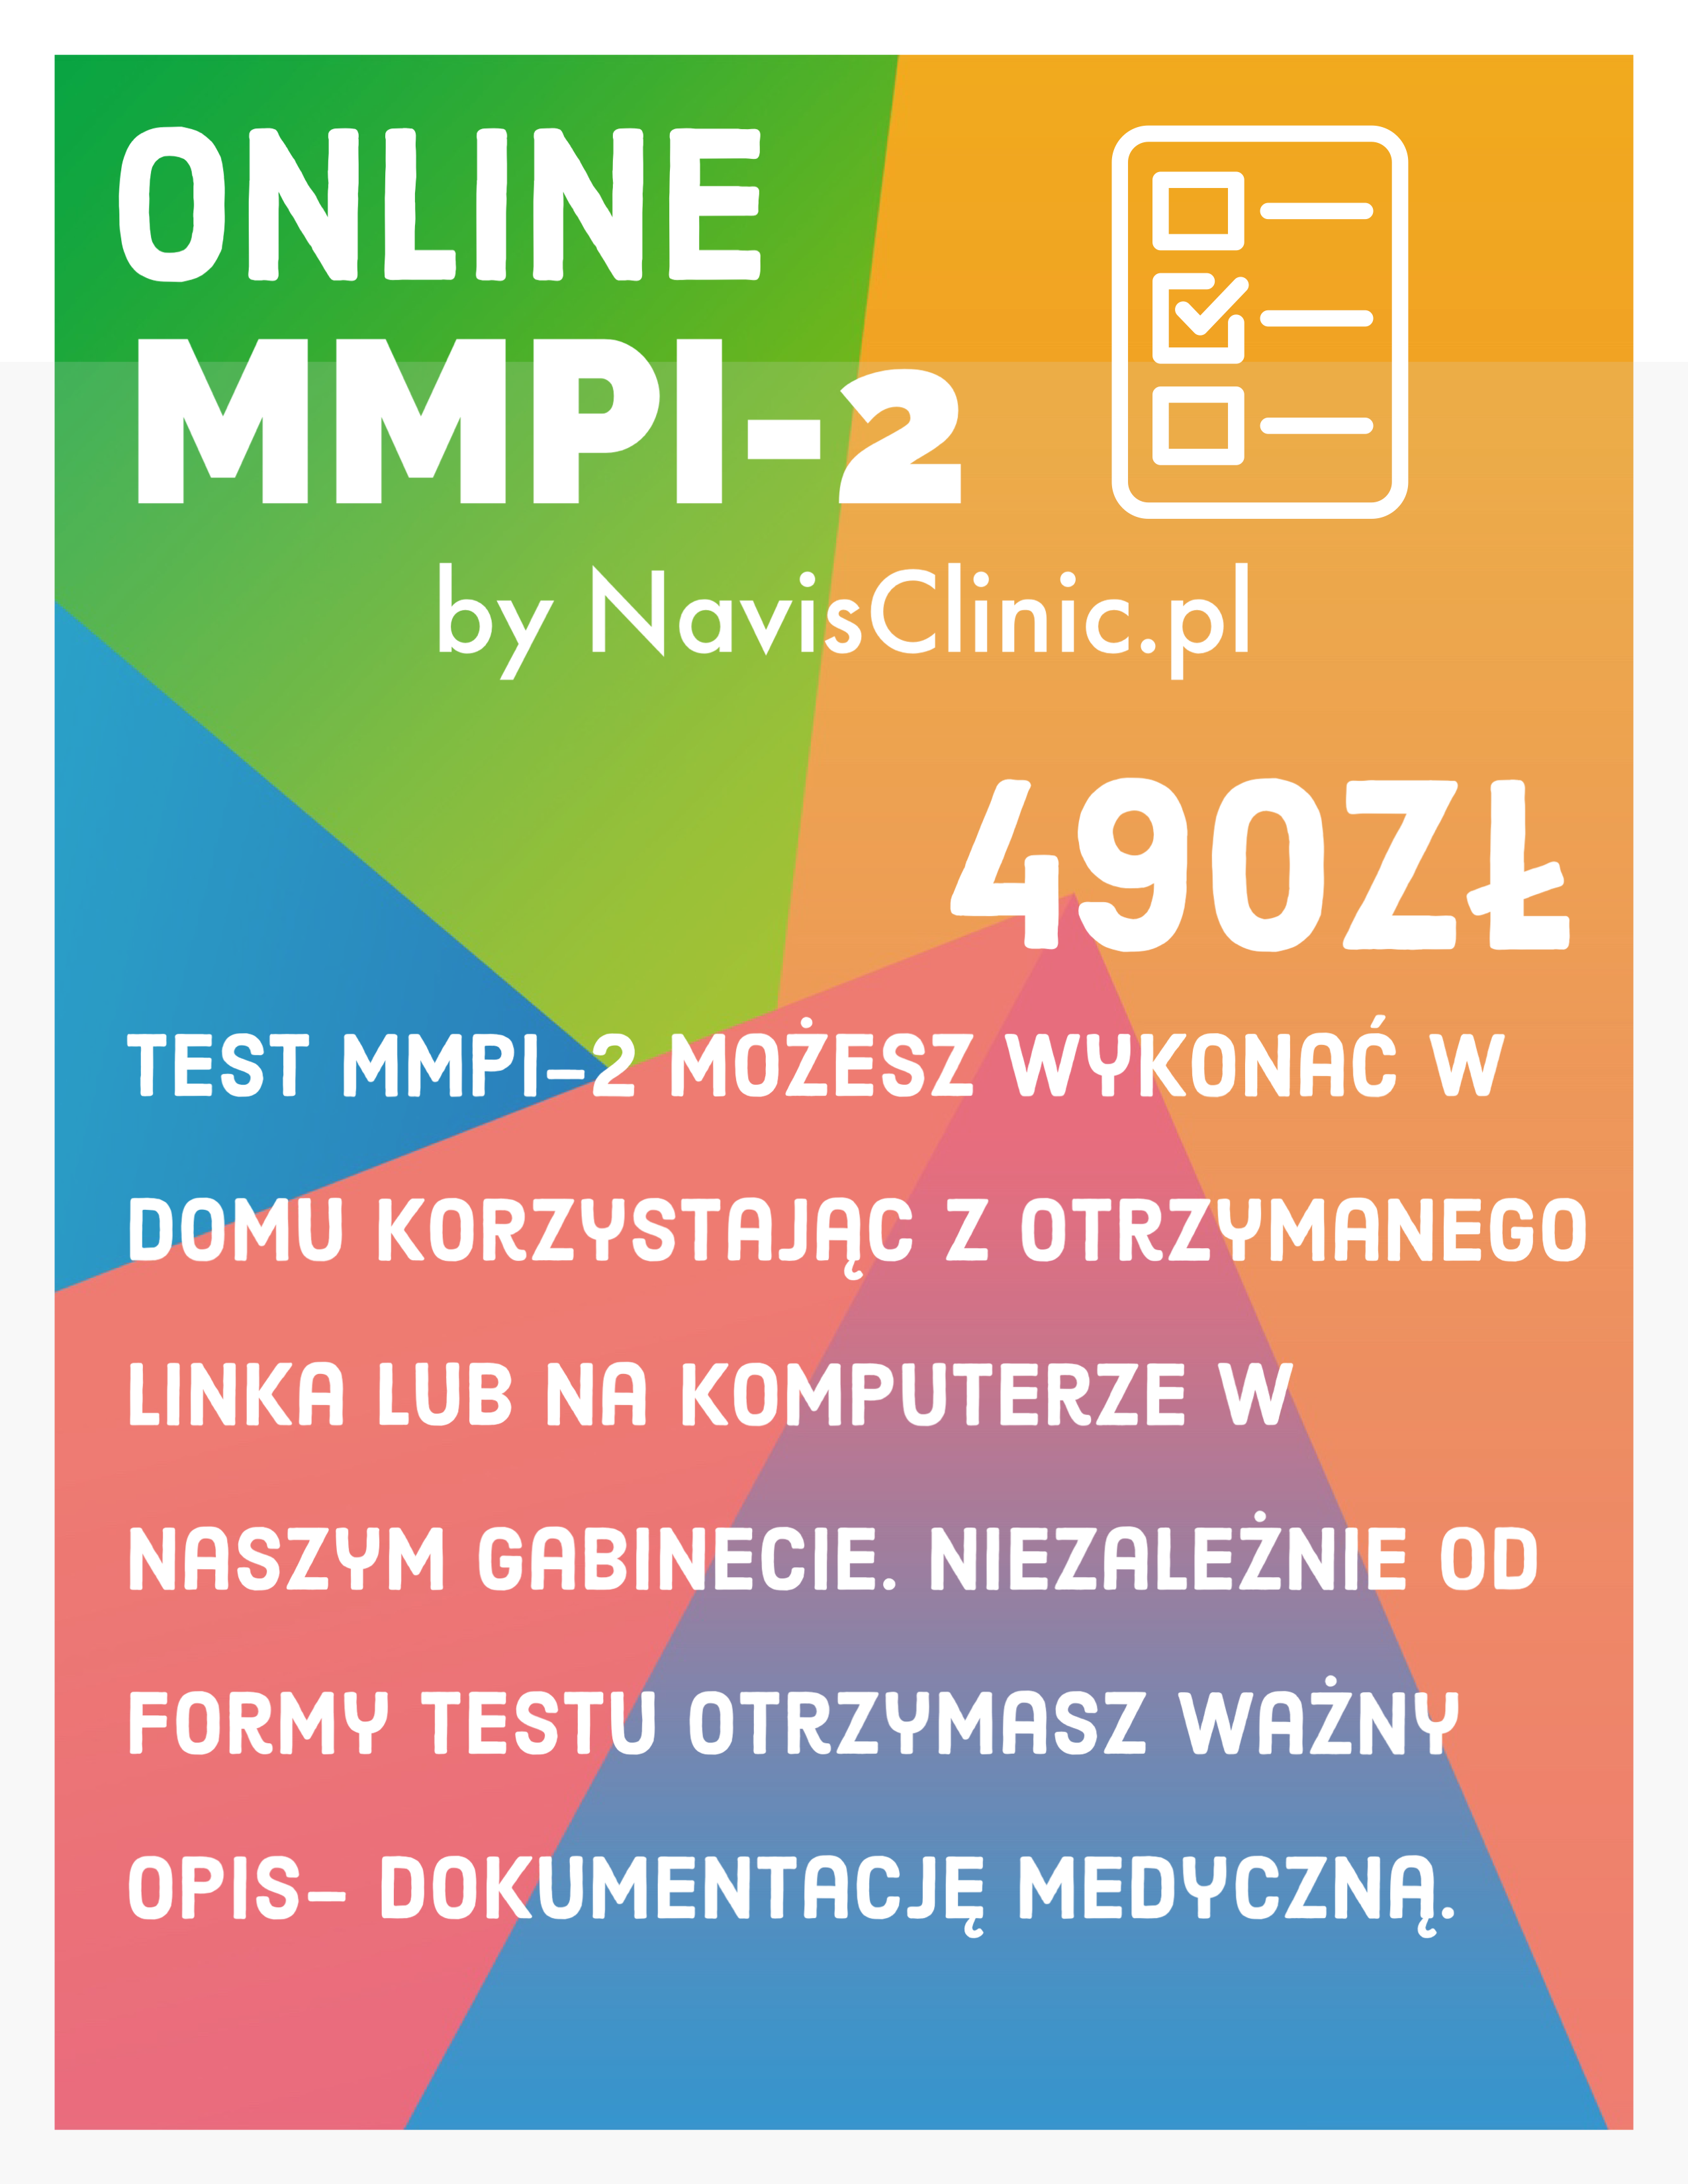 mmpi 2 rf test online